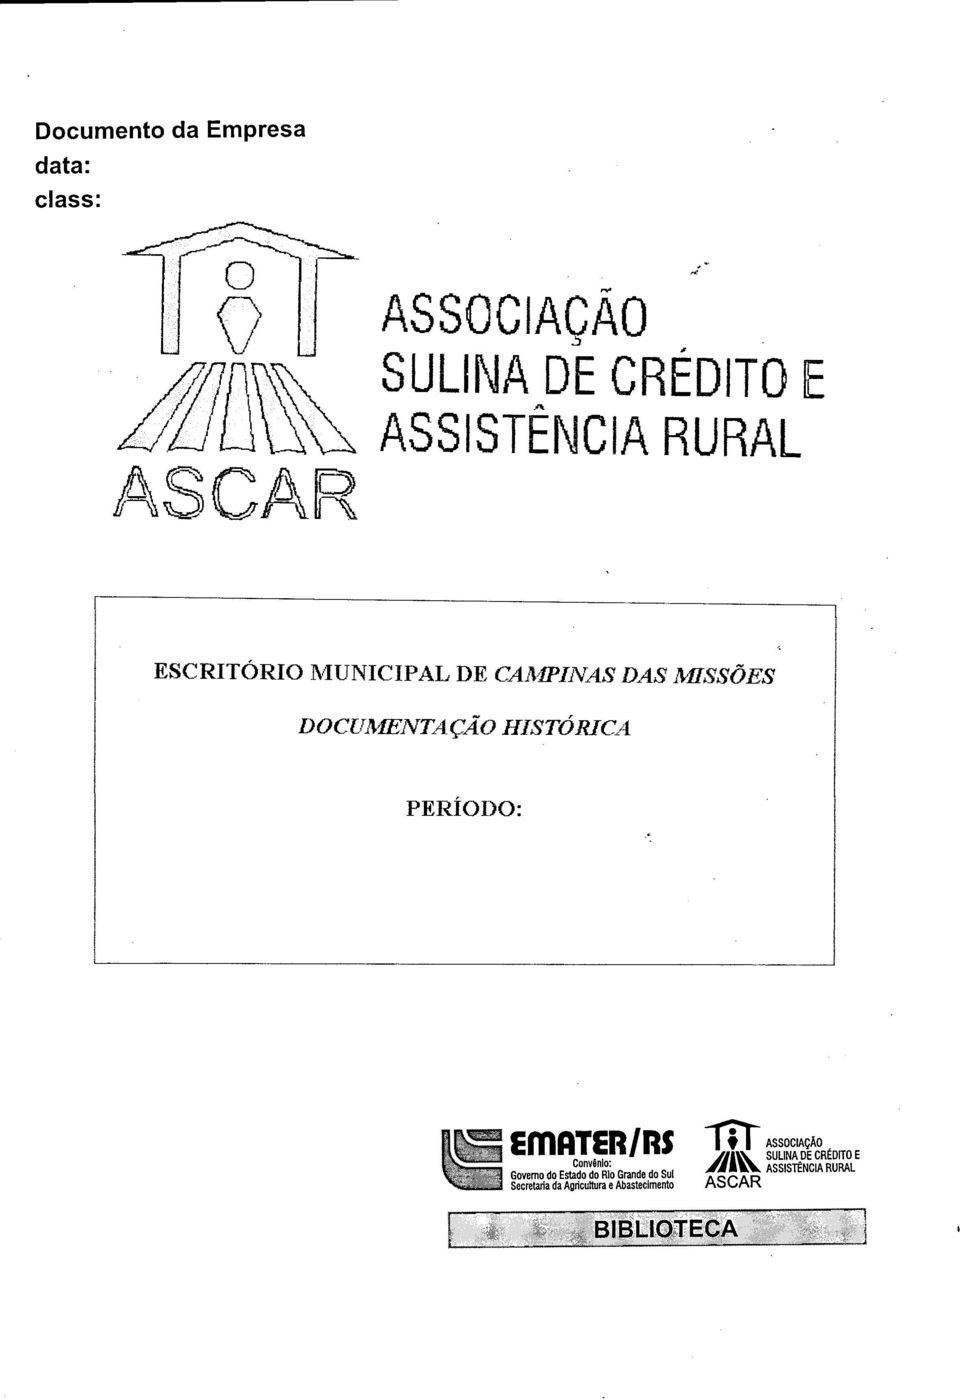 HISTÓRICA PERIODO: EMATER/RS Convênio: Governo do Estado do Rio Grande do Sul